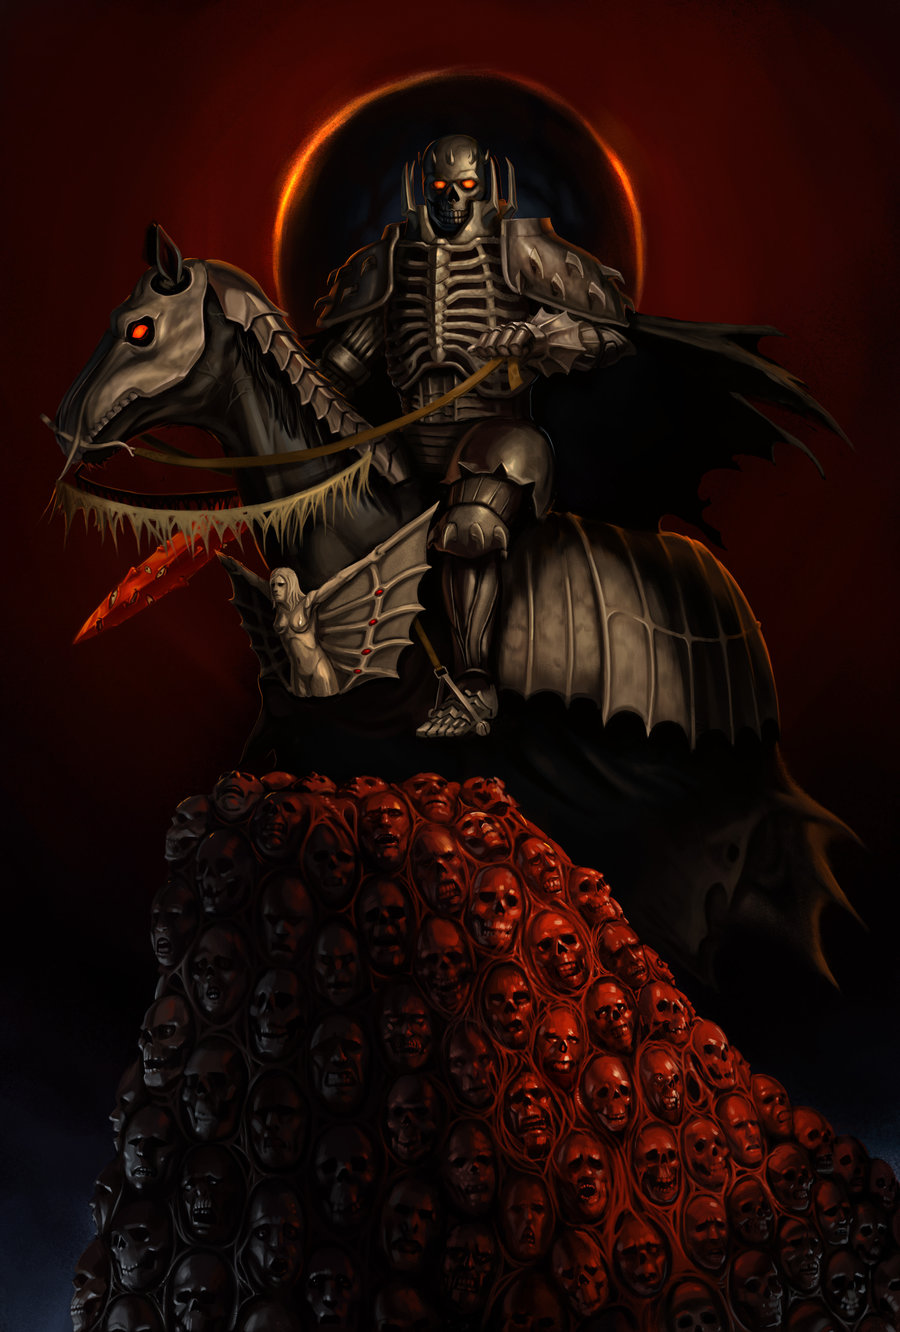 Skull Knight Berserk Wallpapers